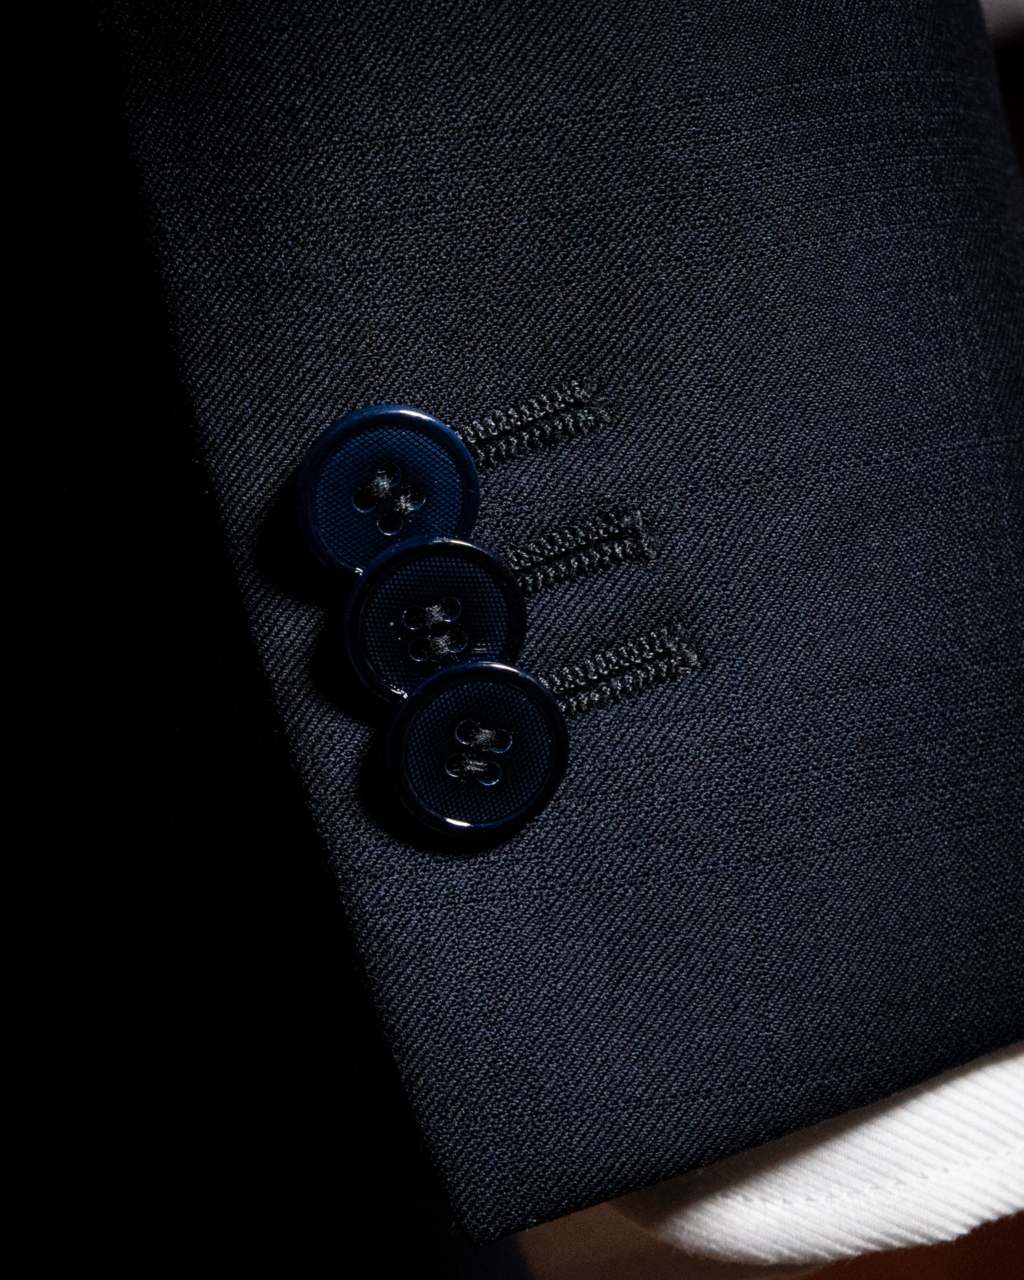 Modernico 3 Piece Suit Dark Blue